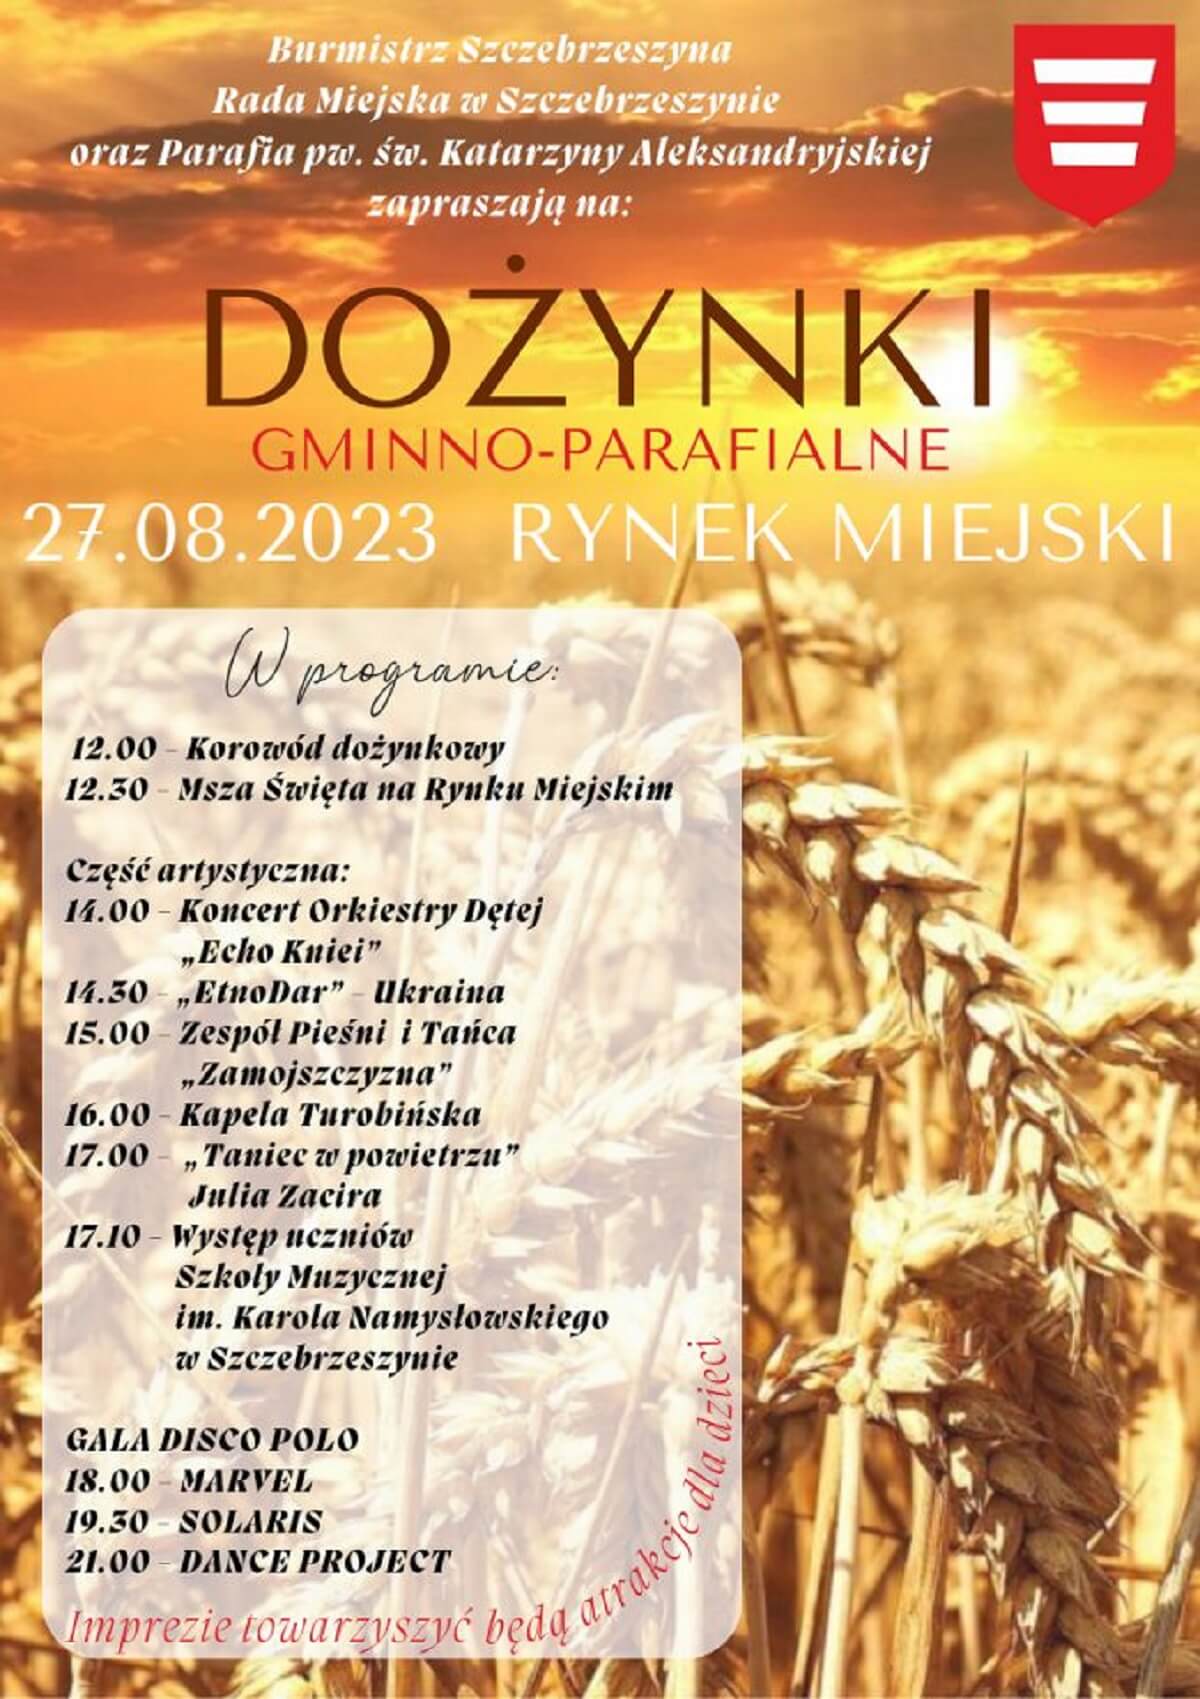 Dożynki w Szczebrzeszynie 2023 - plakat, program wydarzenia